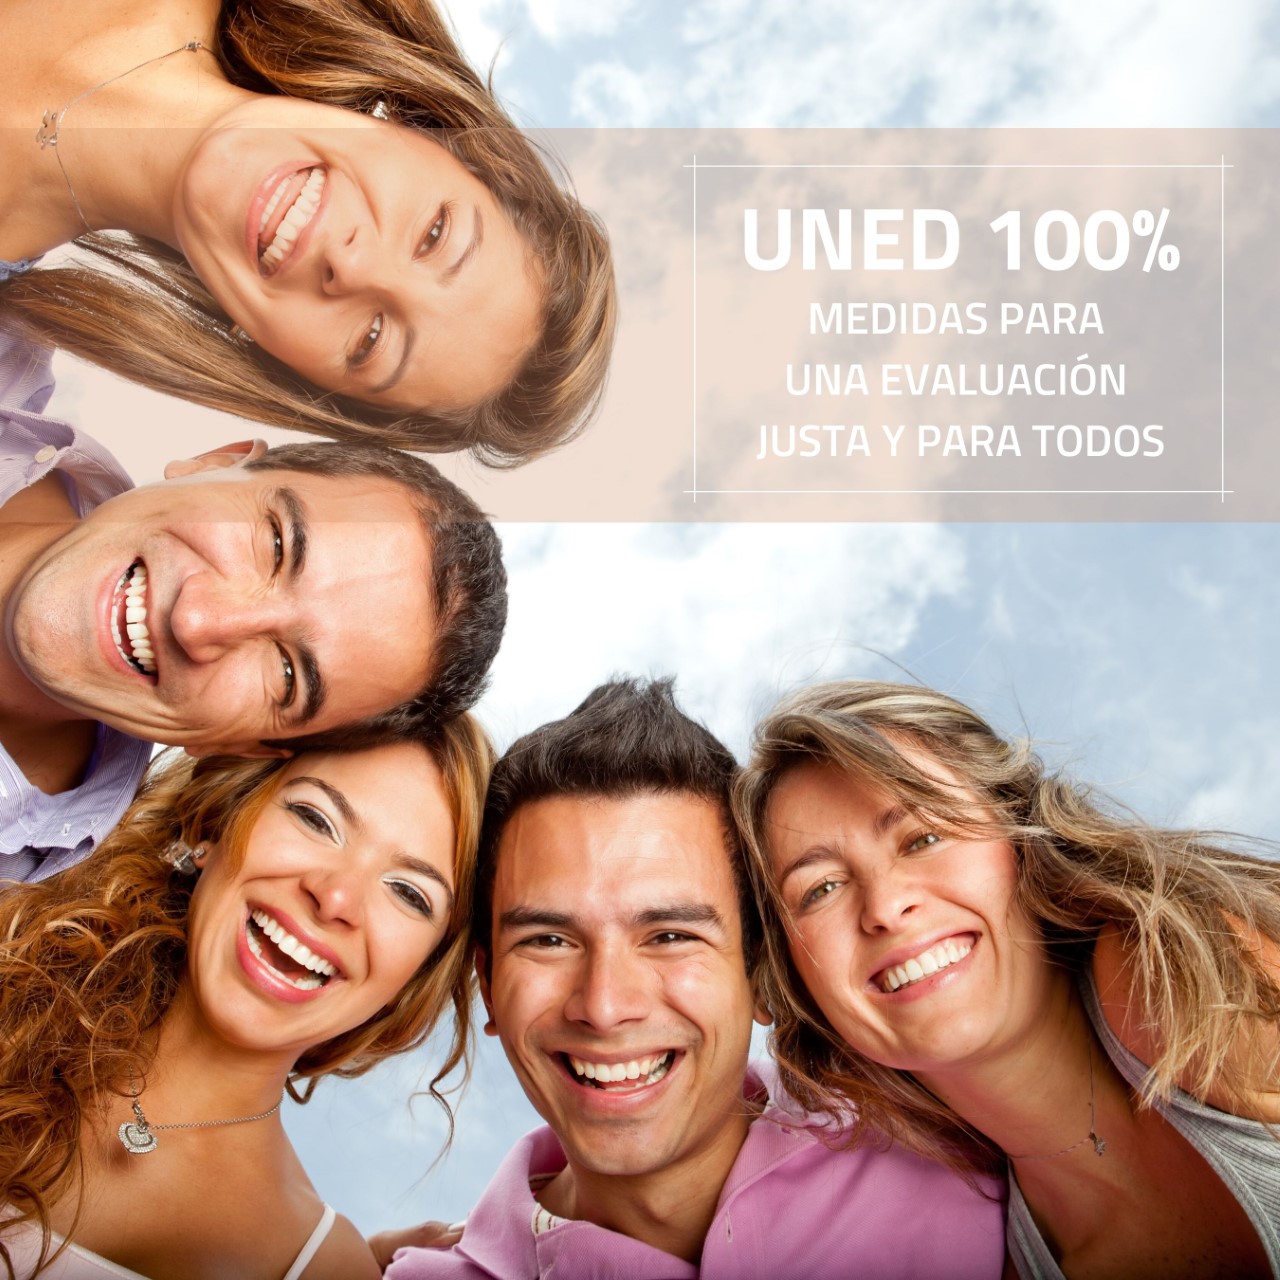 UNED presenta el Proyecto UNED100%